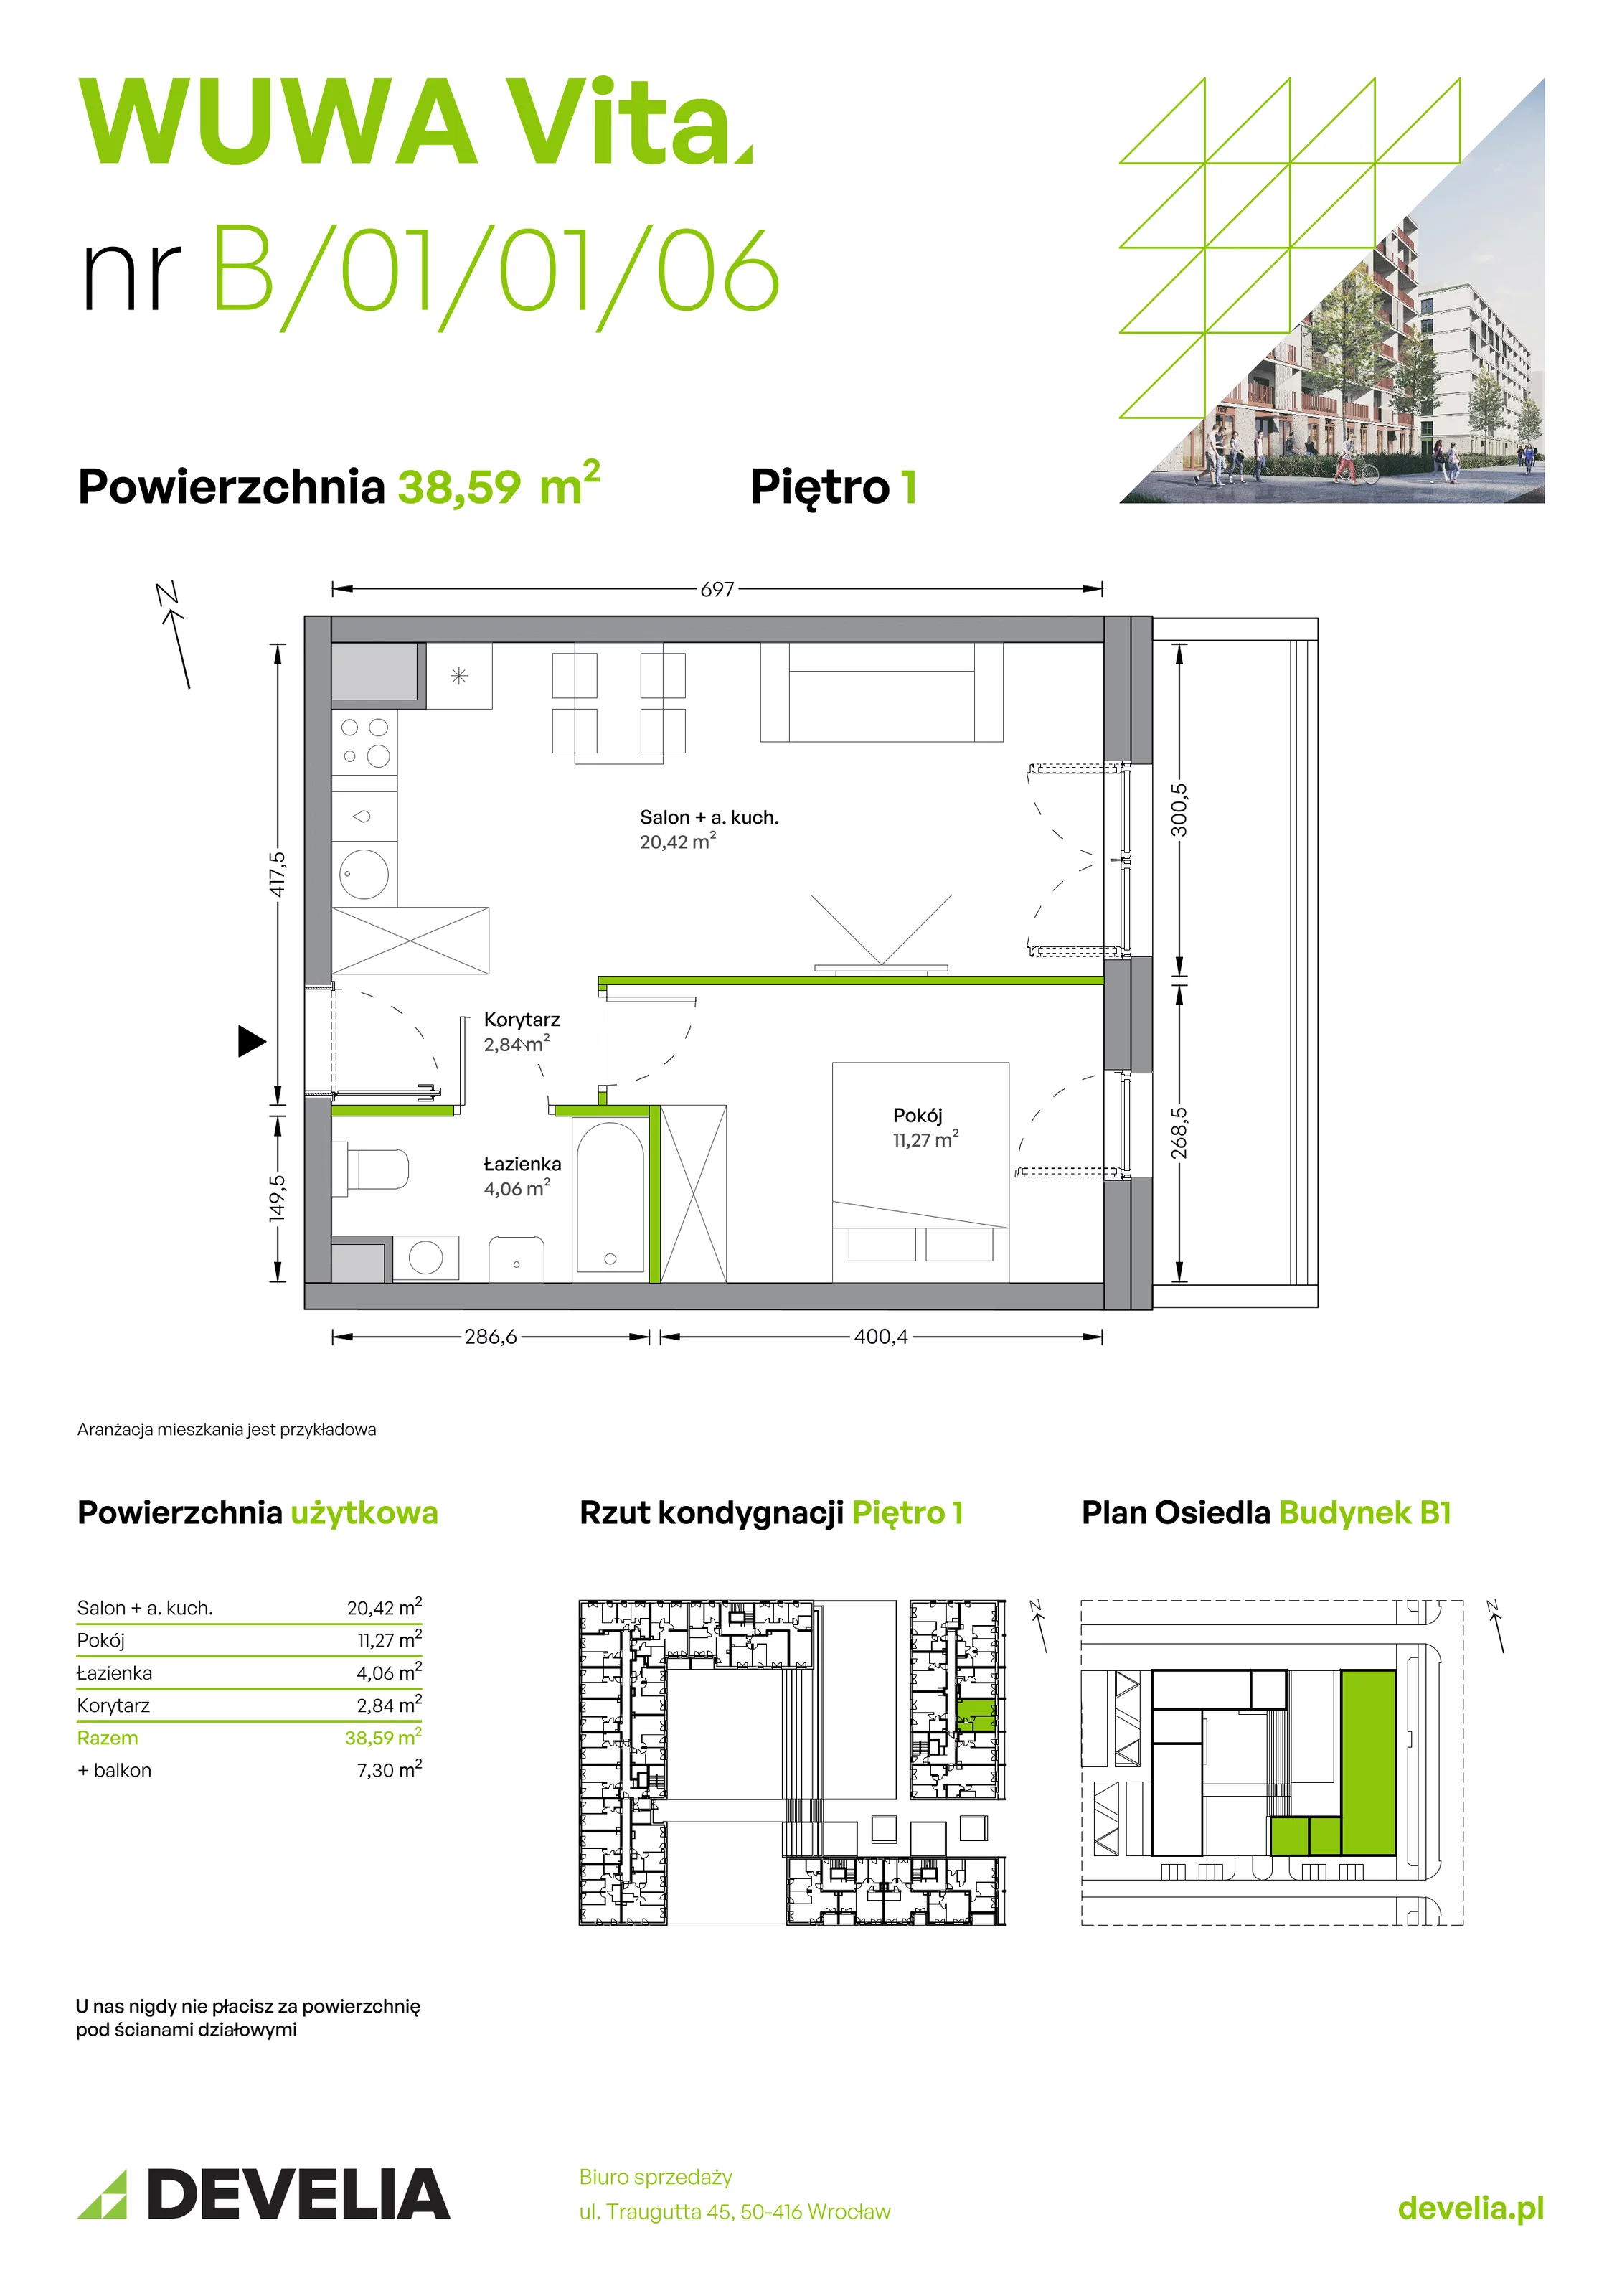 Mieszkanie 38,59 m², piętro 1, oferta nr B.01.01.06, WUWA Vita, Wrocław, Żerniki, Fabryczna, ul. Tadeusza Brzozy